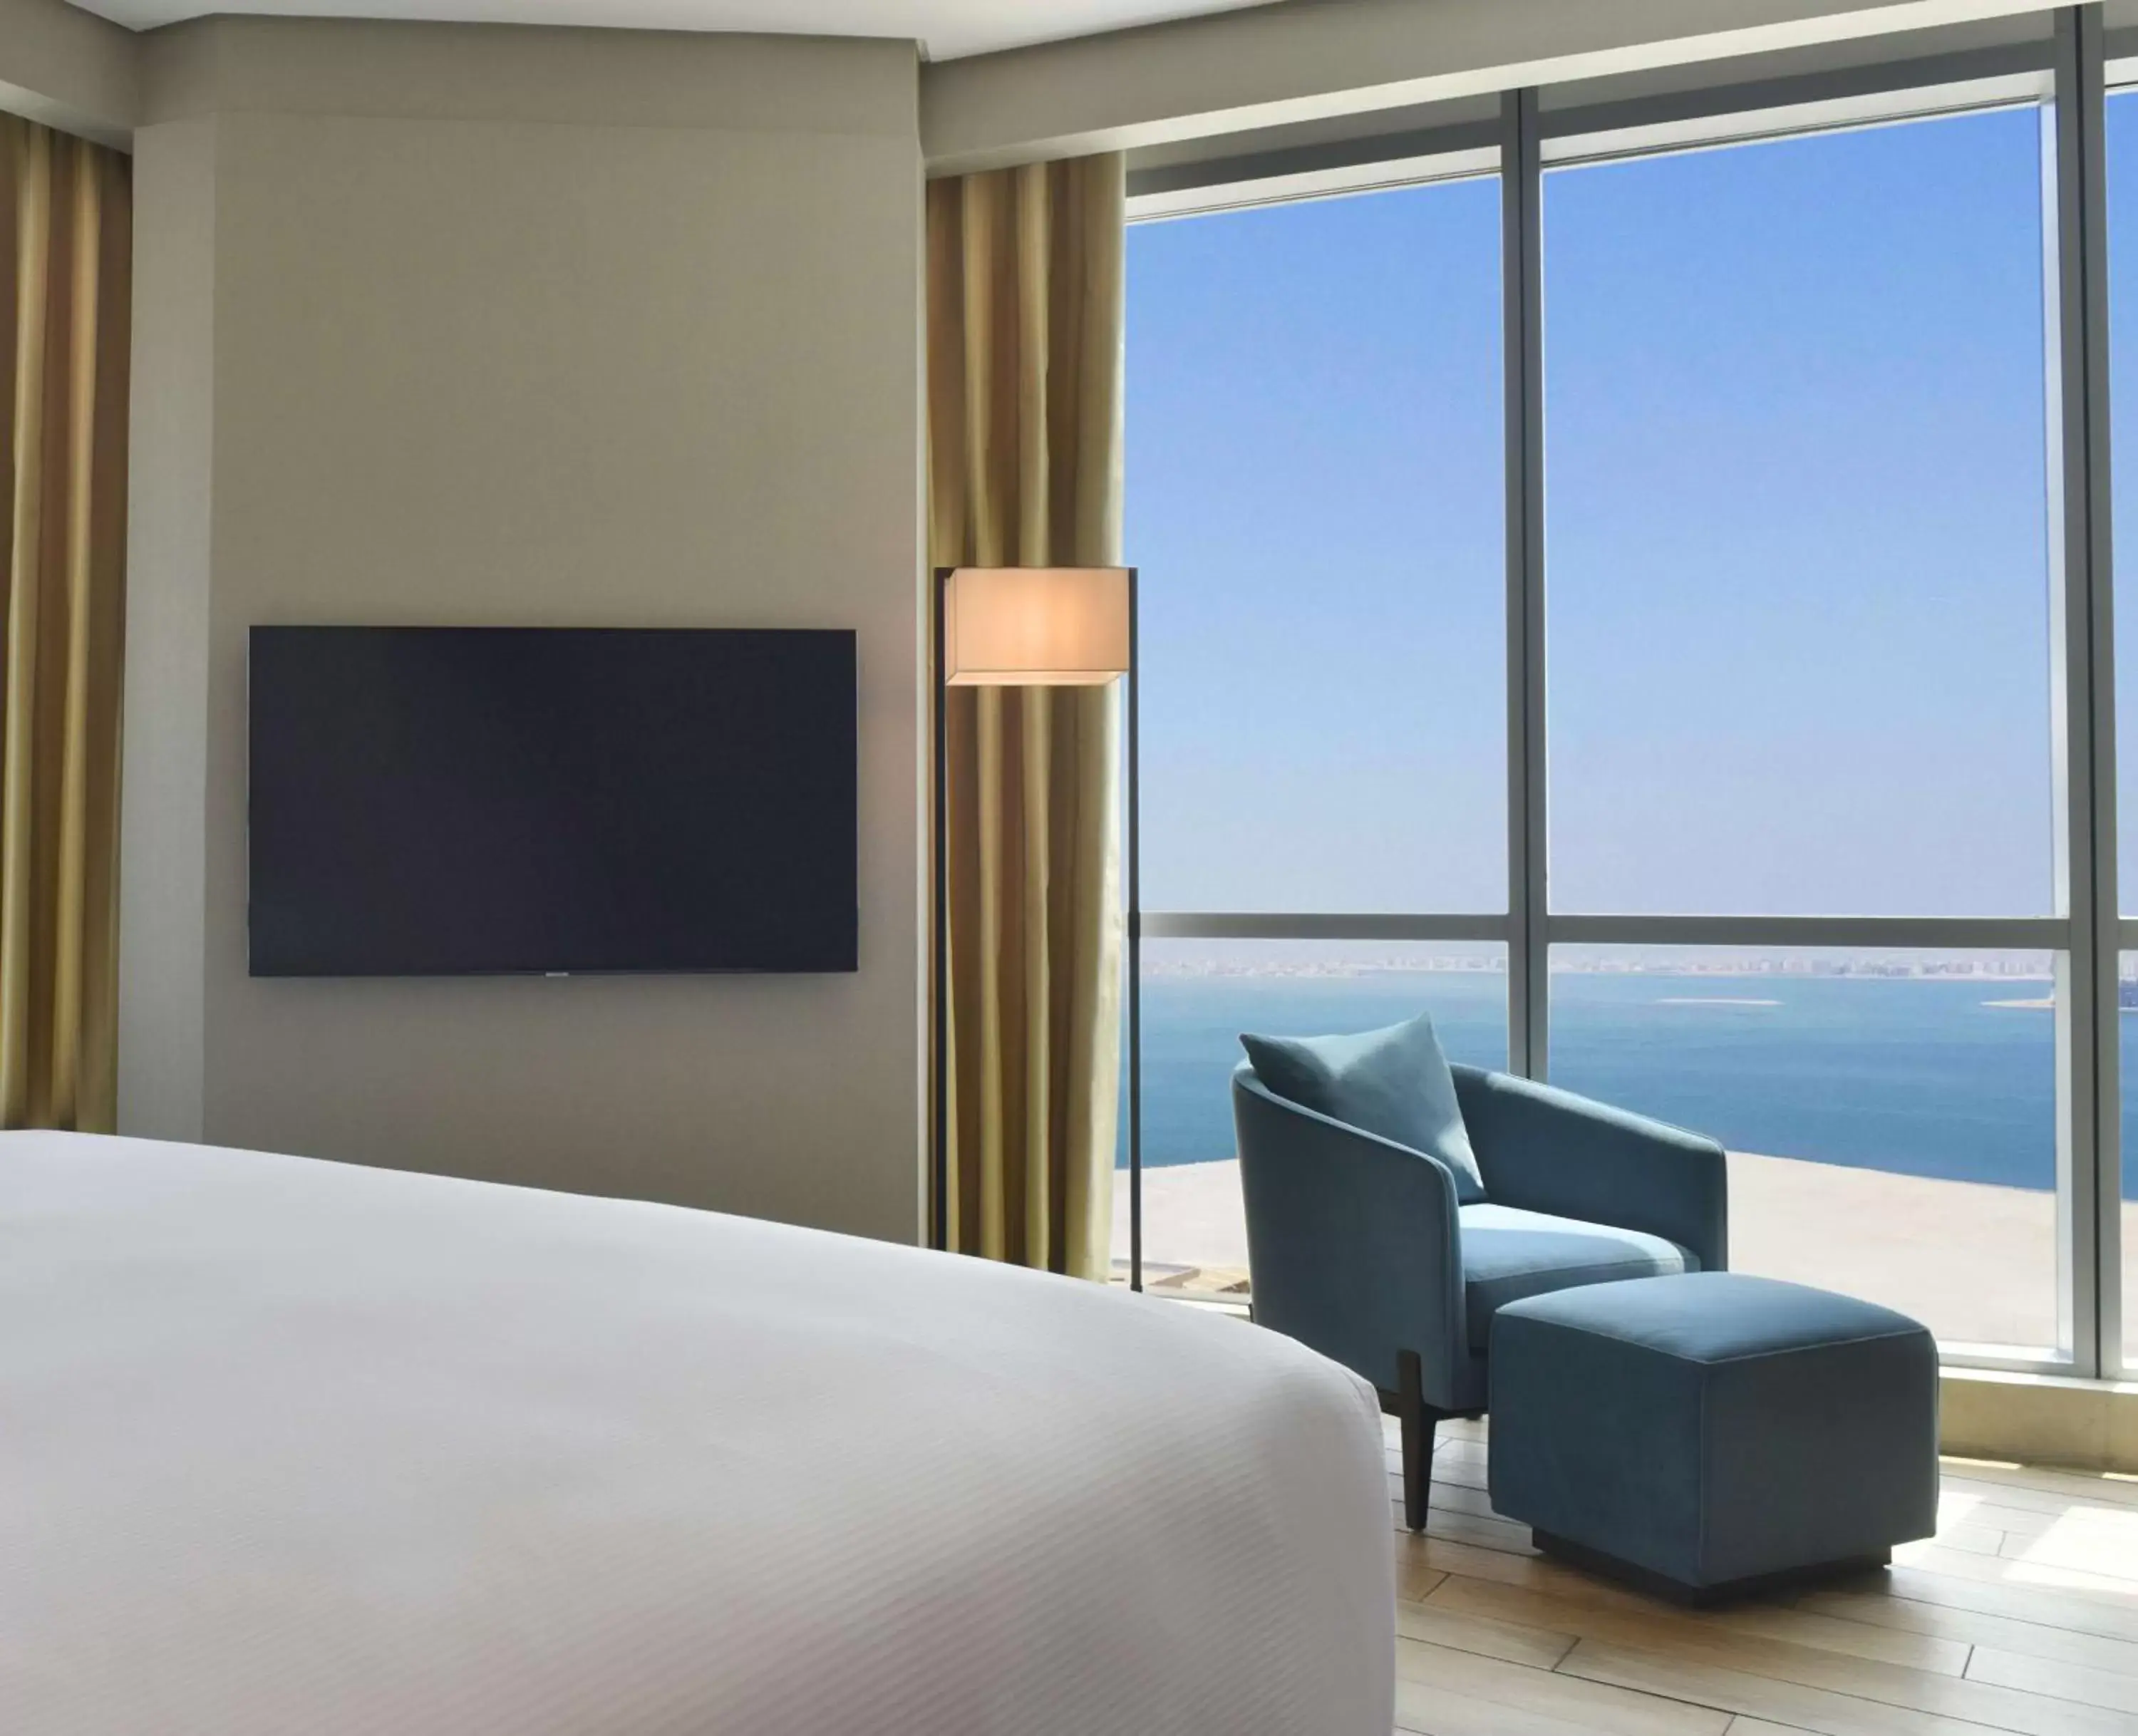 Bedroom, TV/Entertainment Center in Hilton Bahrain